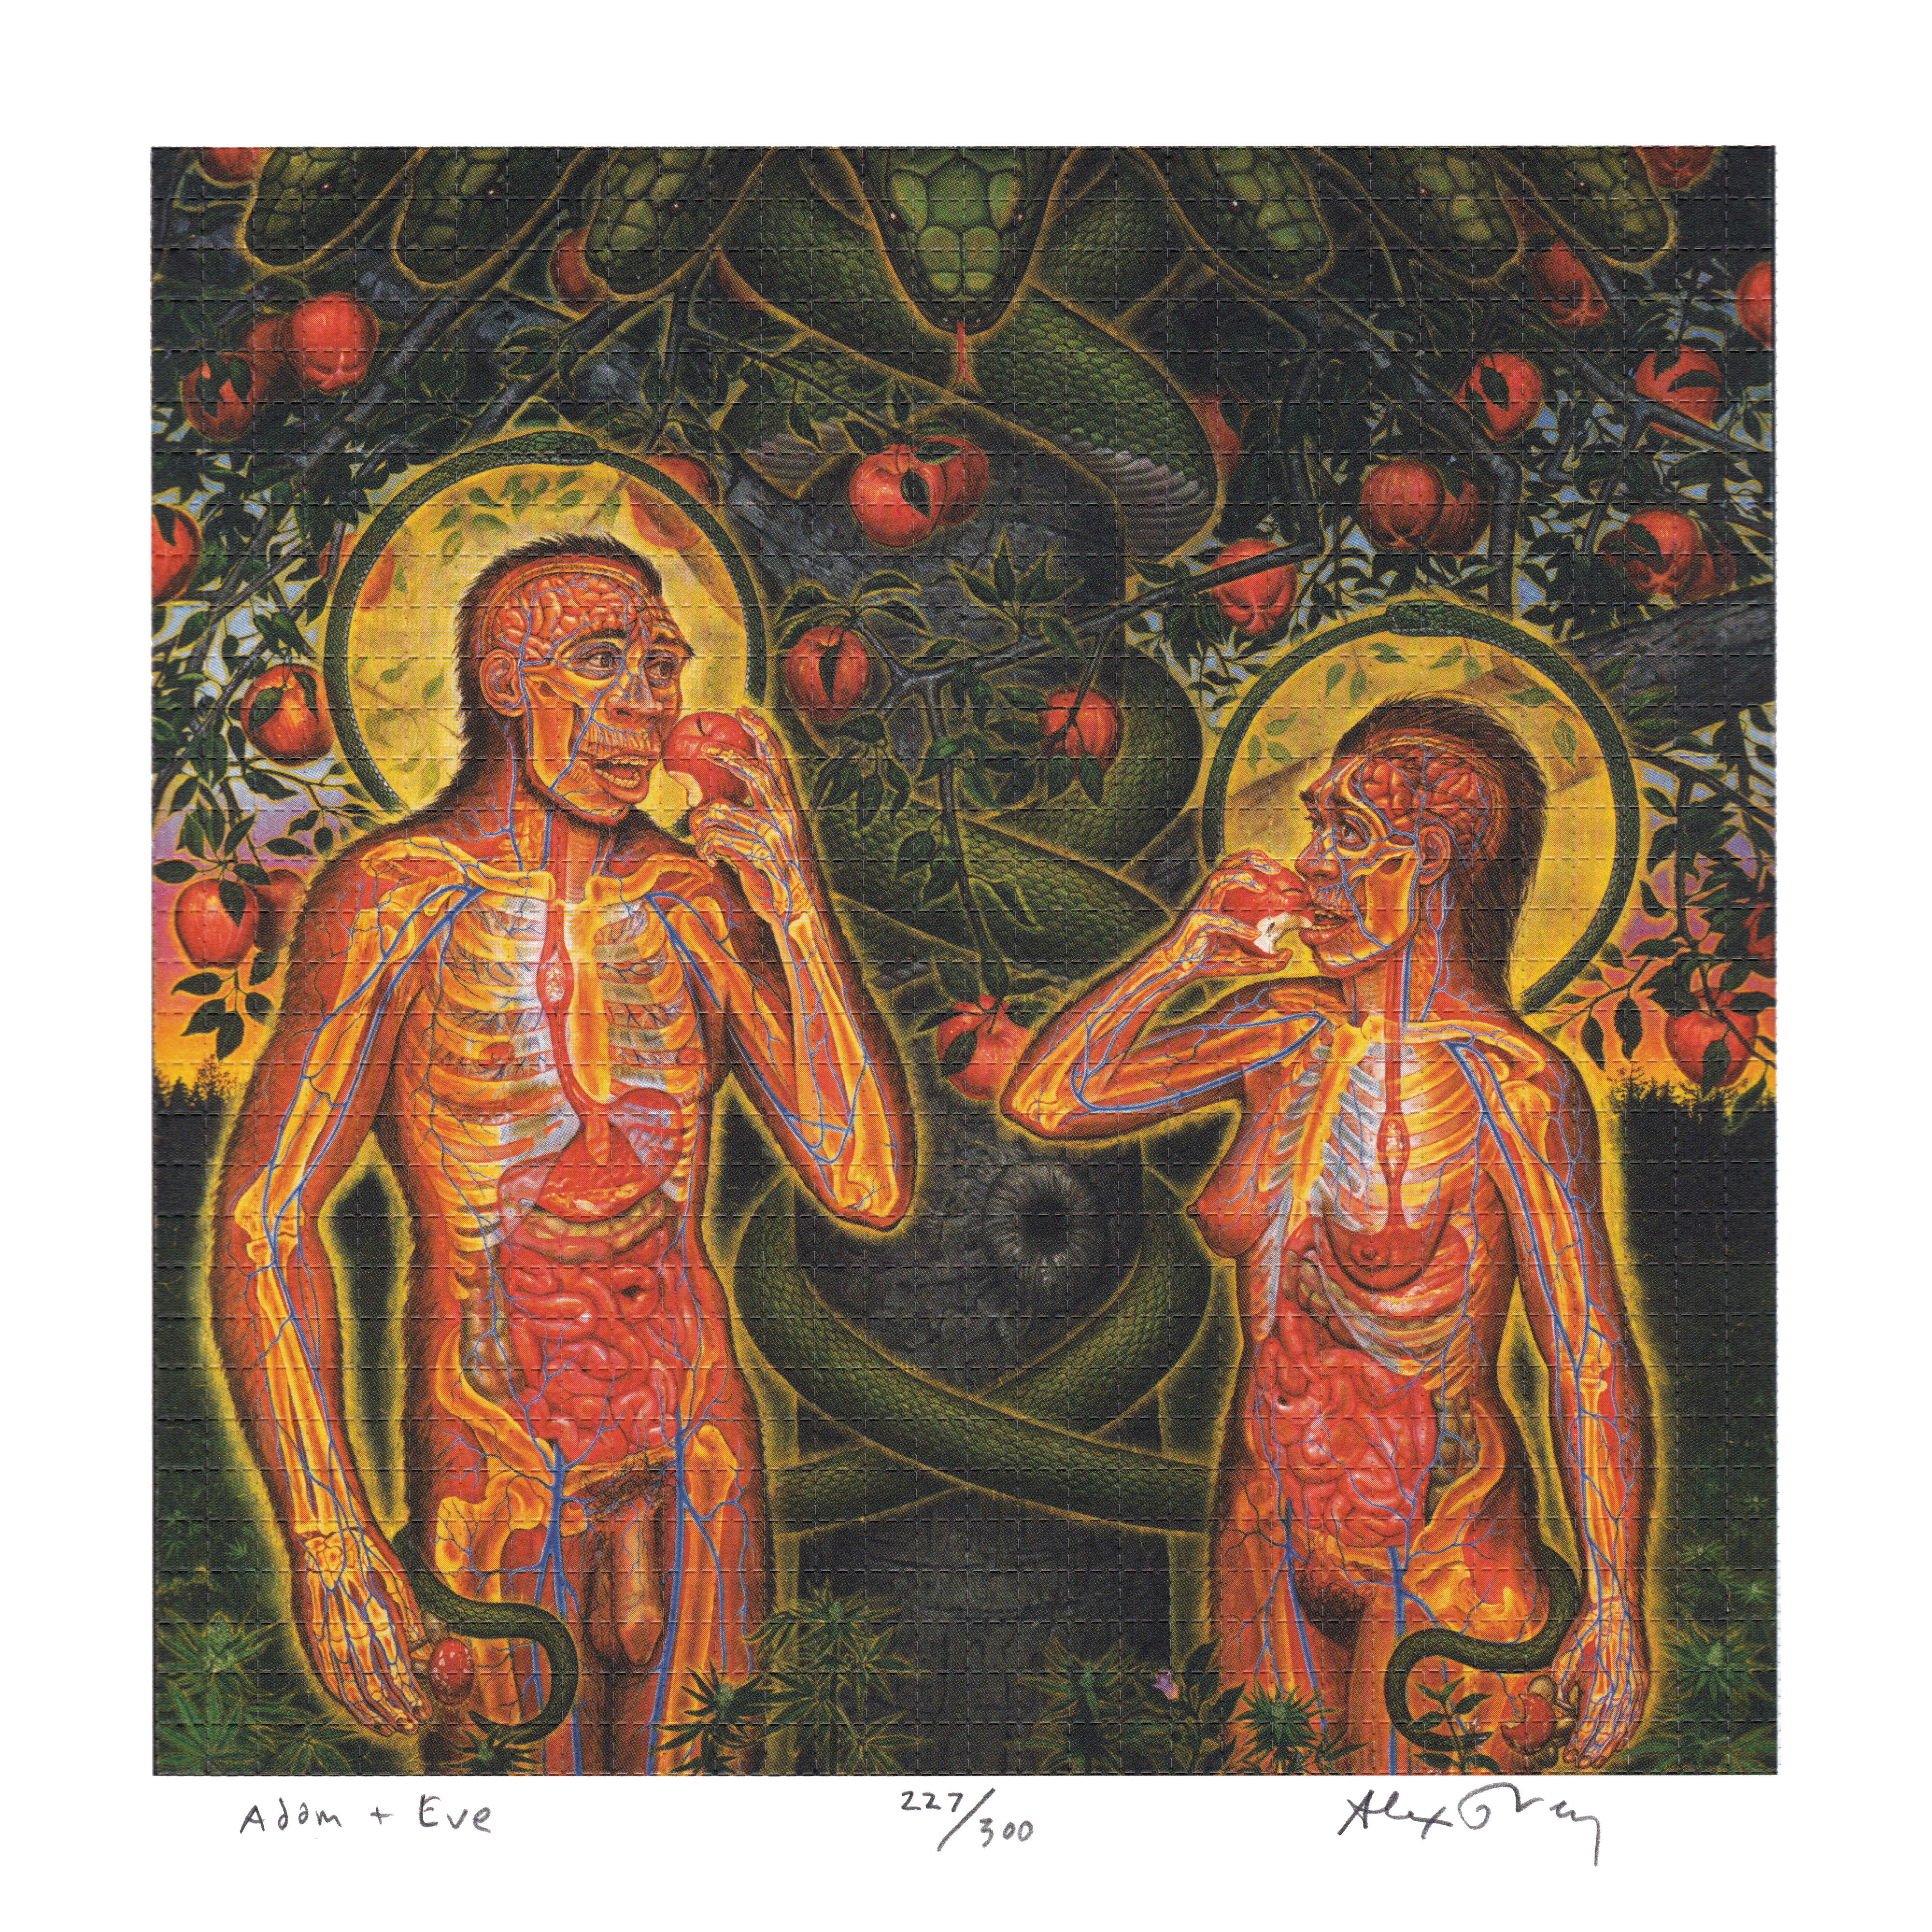 Adam & Eve by Alex Grey as LSD Blotter Art #227/300